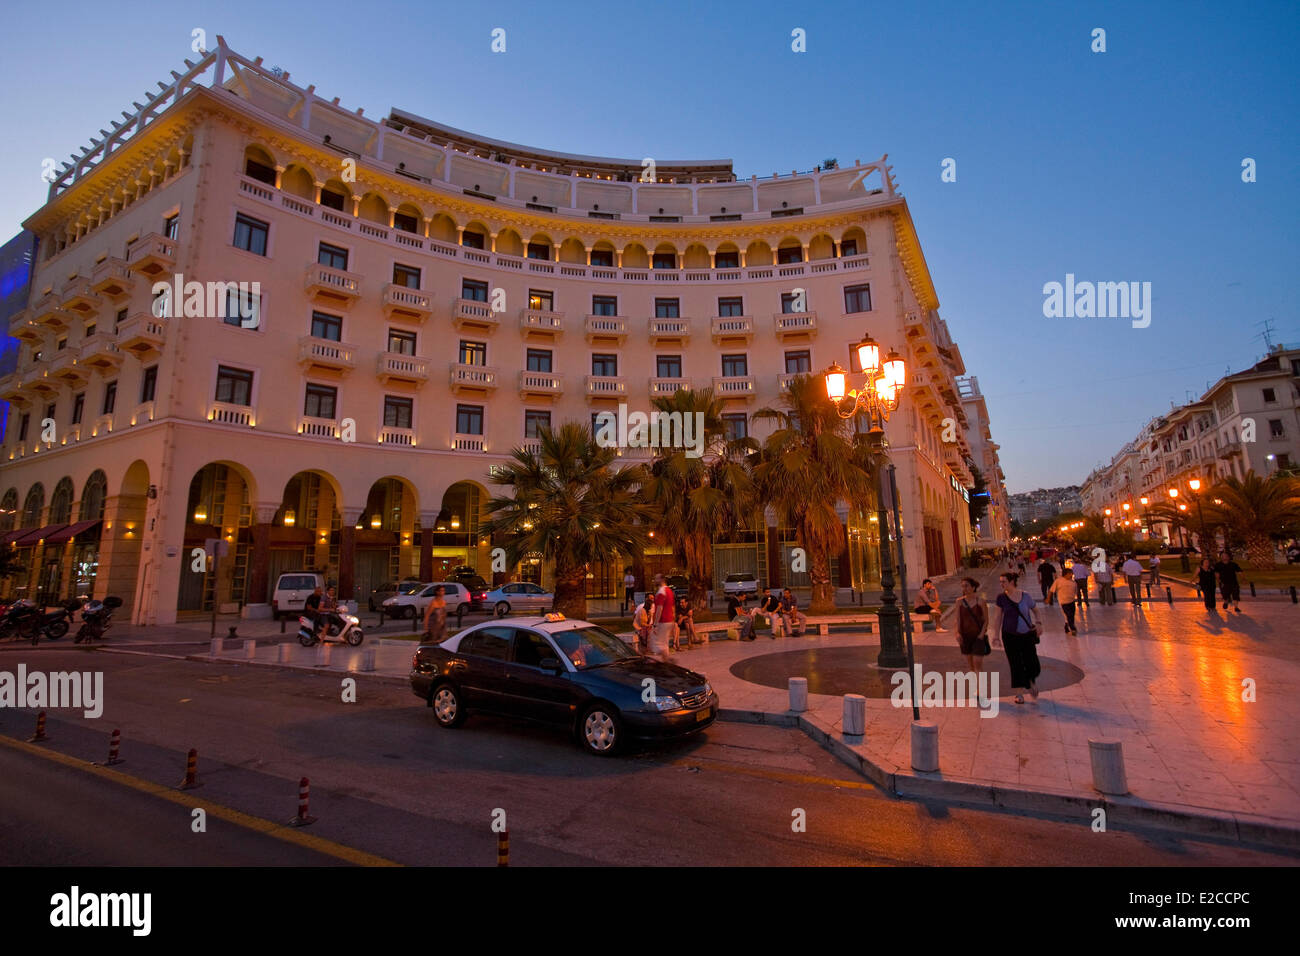 La Grèce, la Macédoine, l'Electra Palace Hotel Thessaloniki, néo-byzantin et la façade sur la place bordée de cafés est le coeur de la station balnéaire Banque D'Images